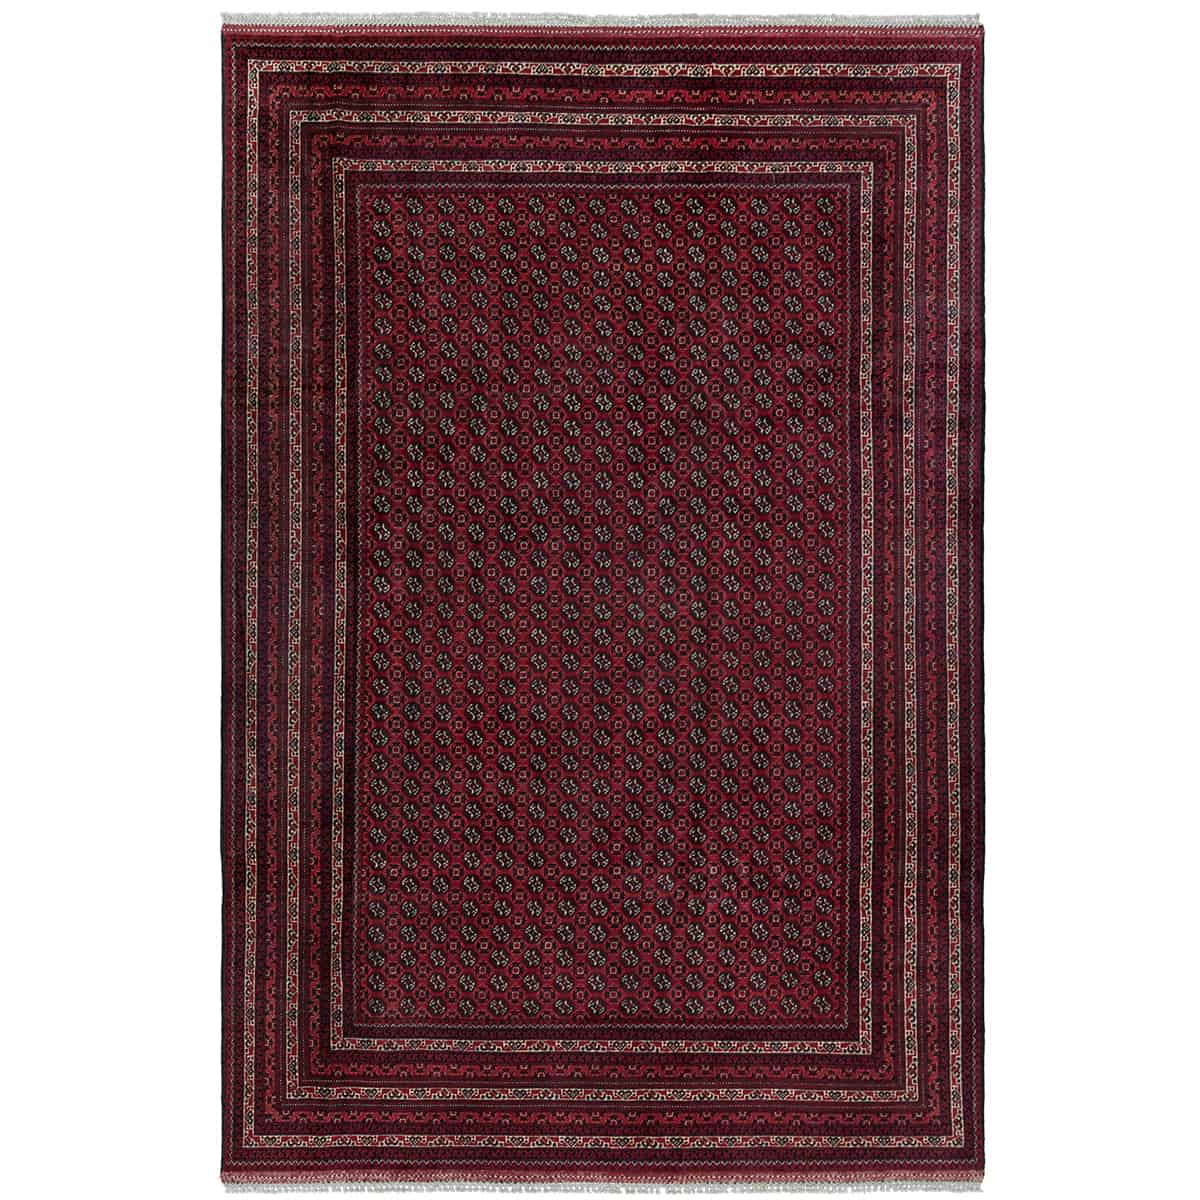  אפגני באשיר 00 אדום 200x299 | השטיח האדום 